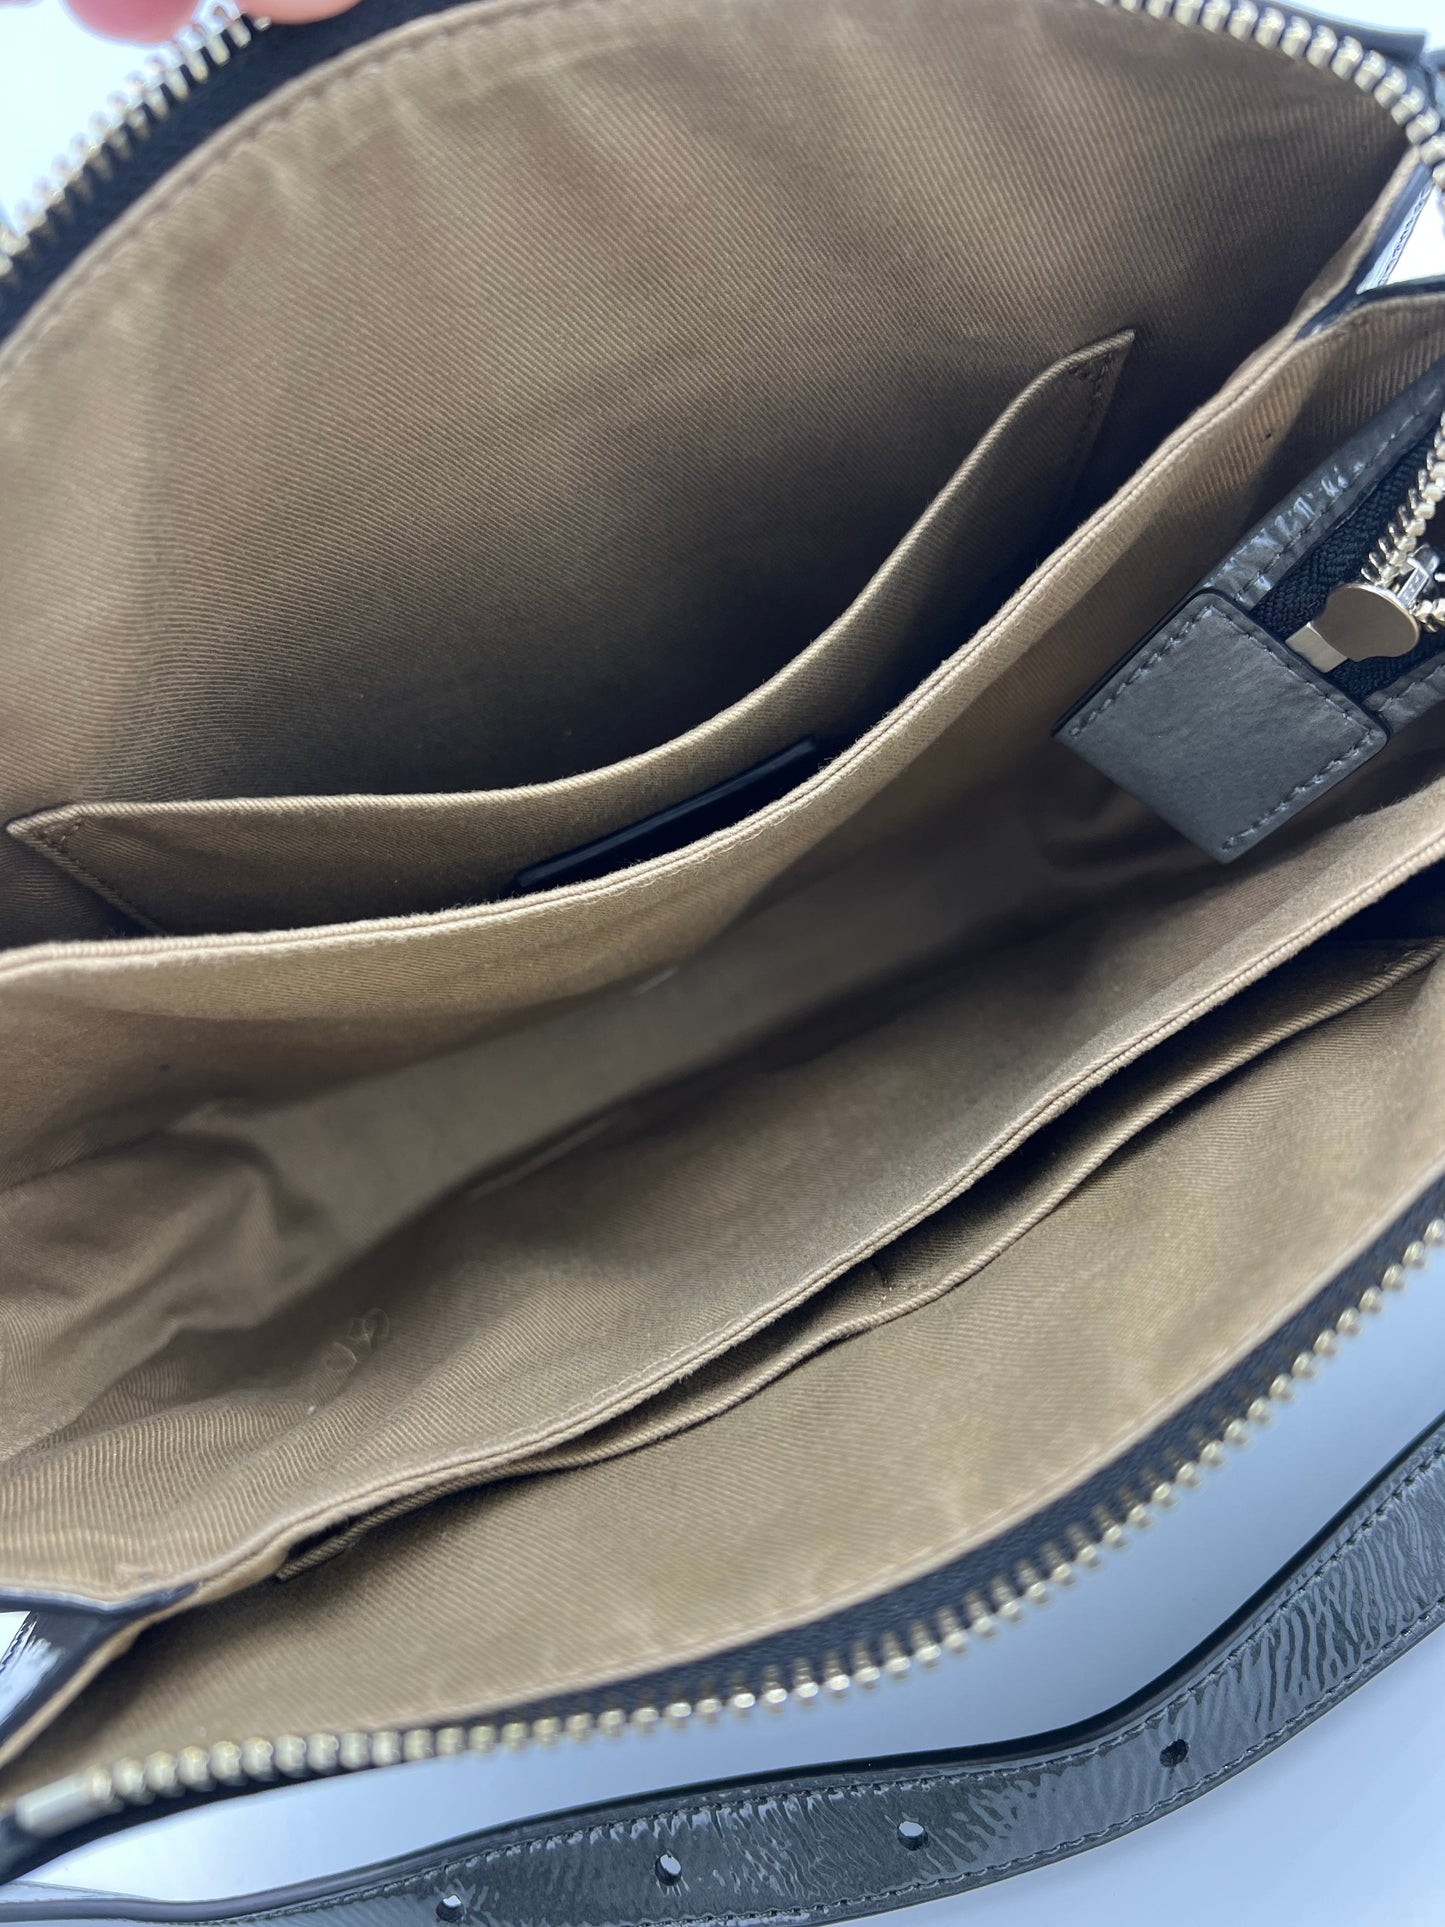 Handbag Designer By All Saints  Size: Medium